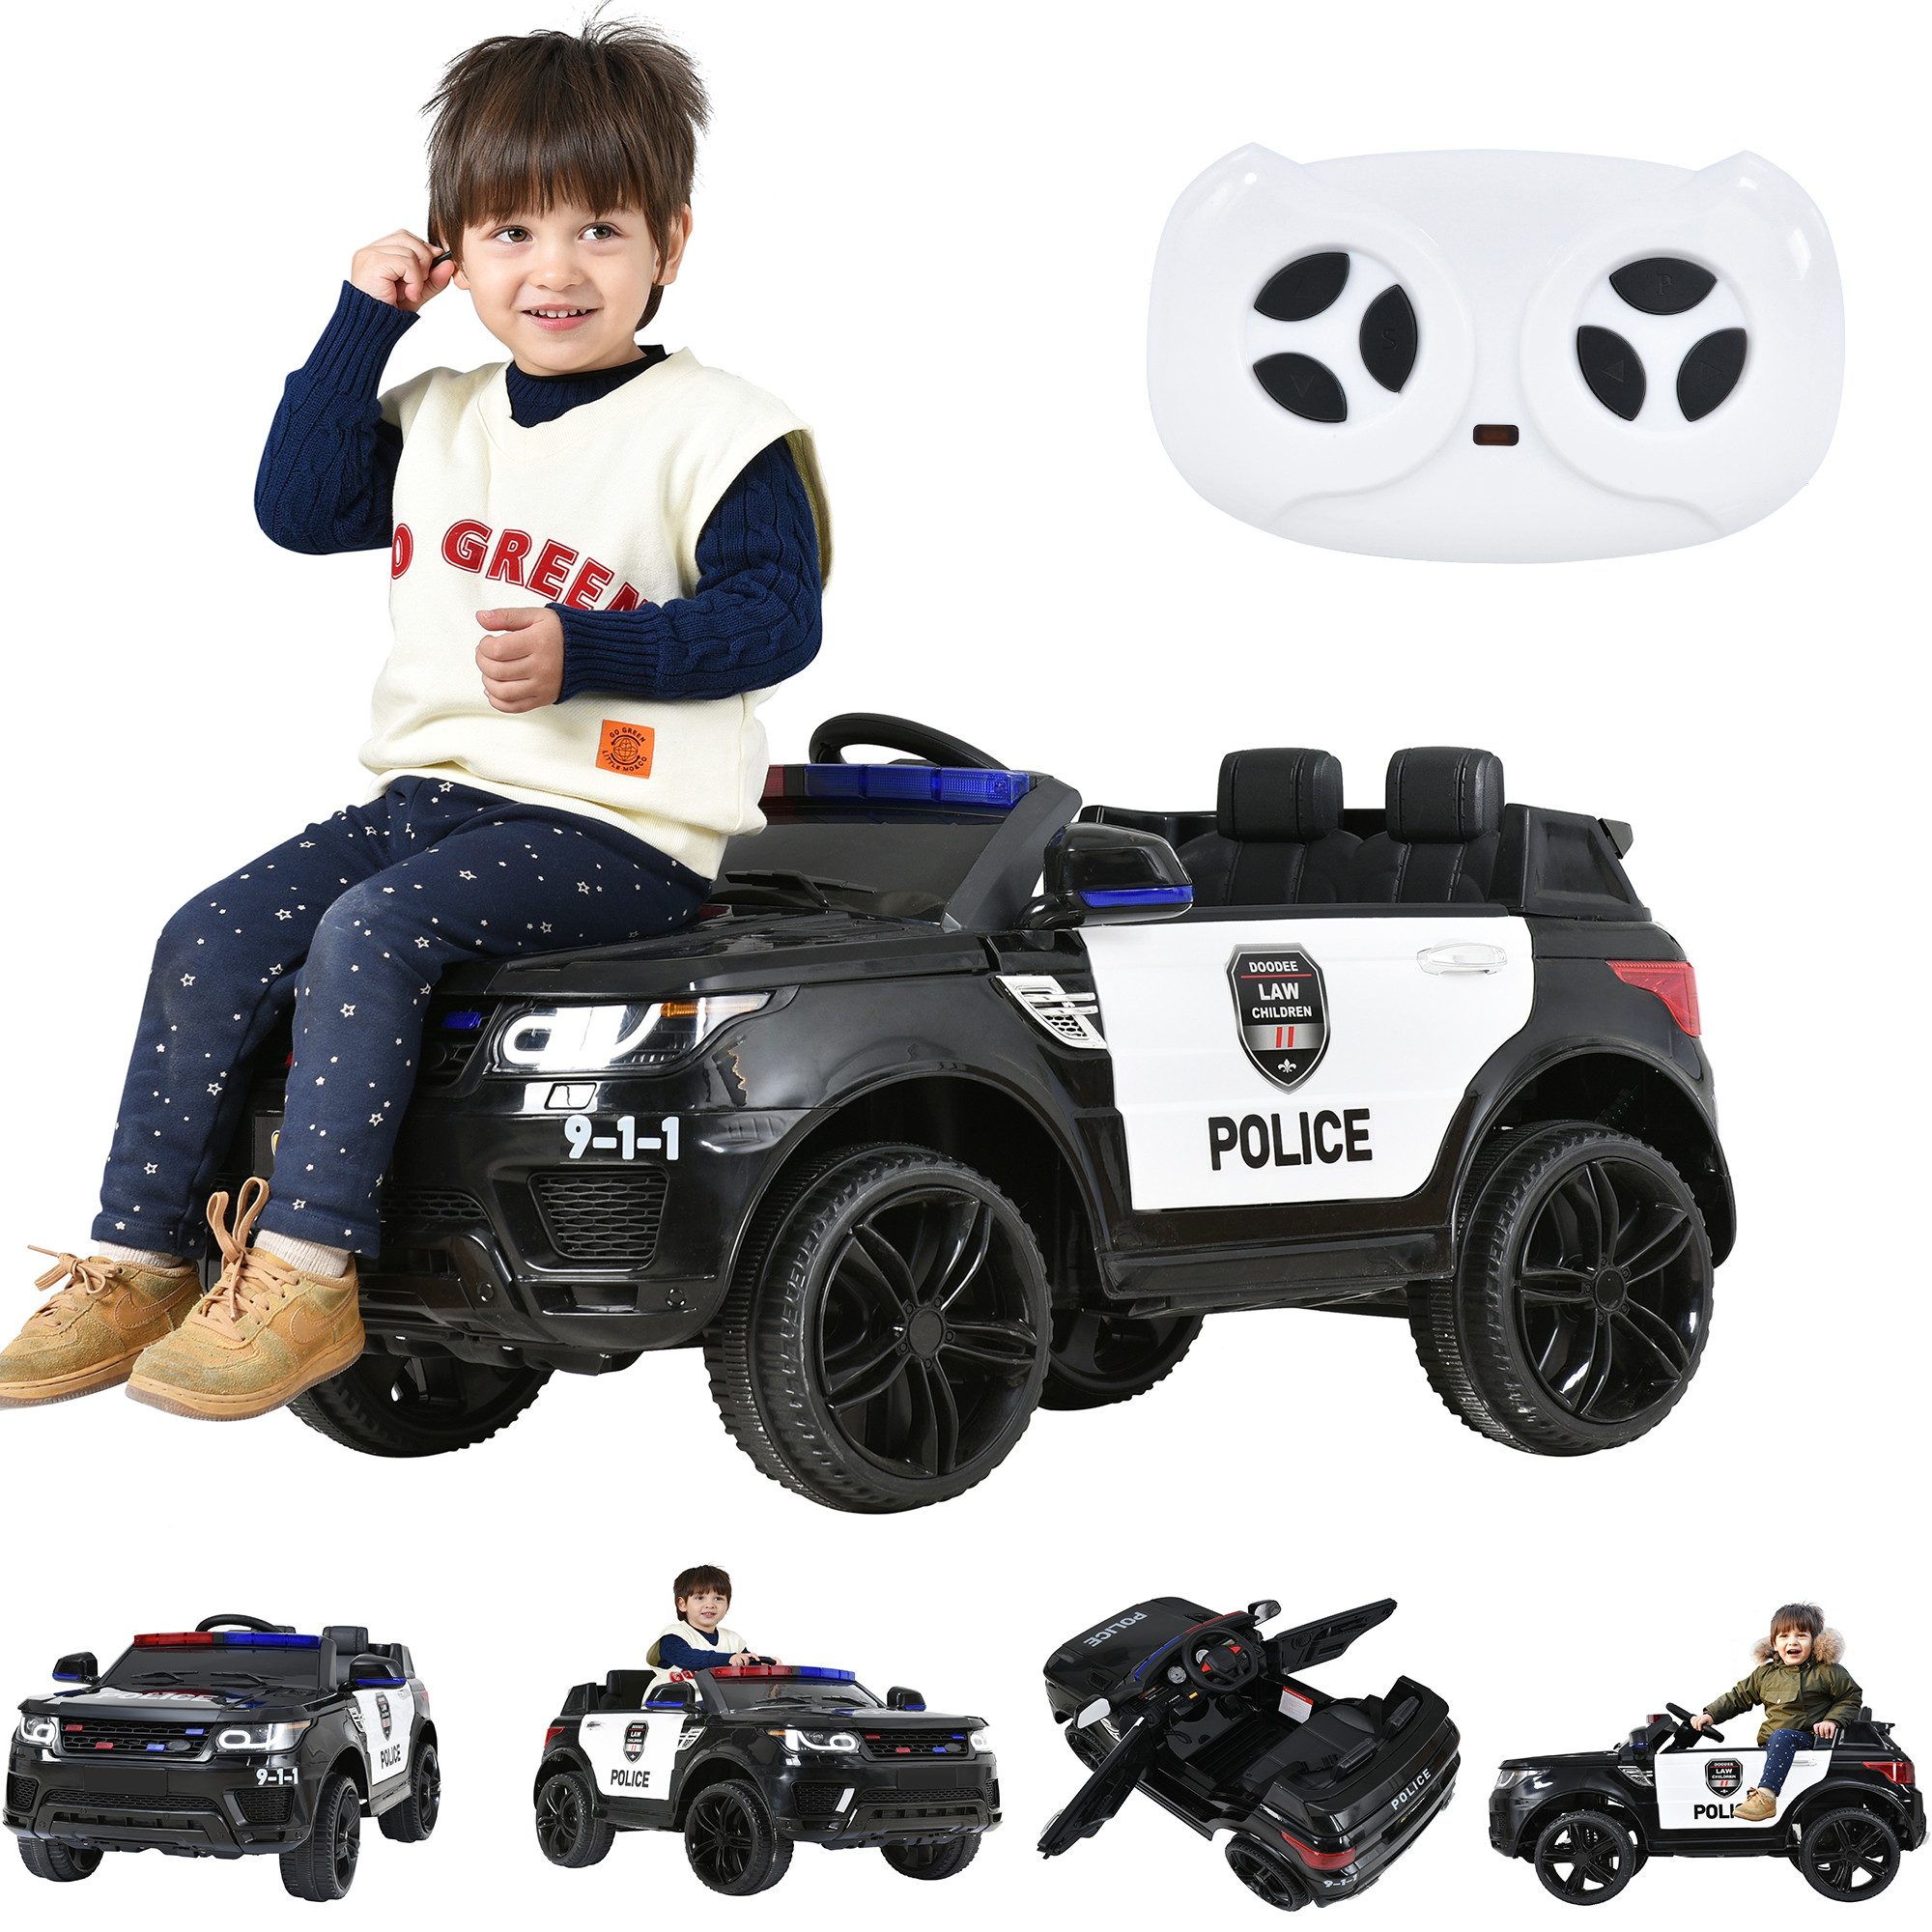 GelldG Elektro-Kinderauto Elektroauto Polizei, 2 Sitze Kinderauto, mit 2,4G Fernbedienung, MP3, Belastbarkeit 30 kg, (2-tlg), Starke Kraft, hohe Sicherheit, lange Arbeitszeit aufrechterhalten